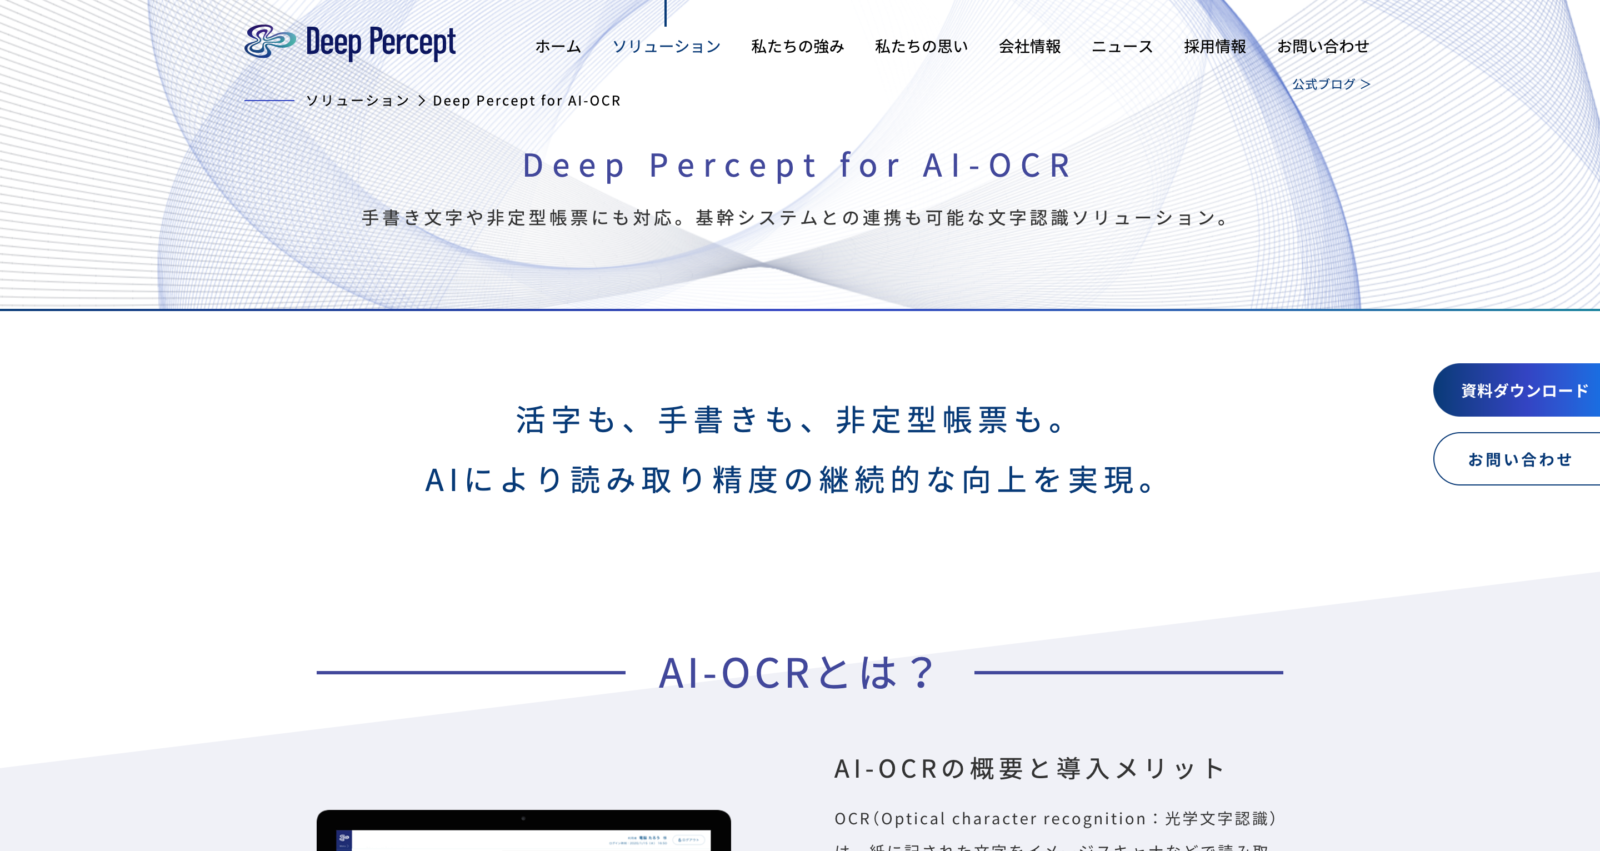 Deep Percept for AI-OCR